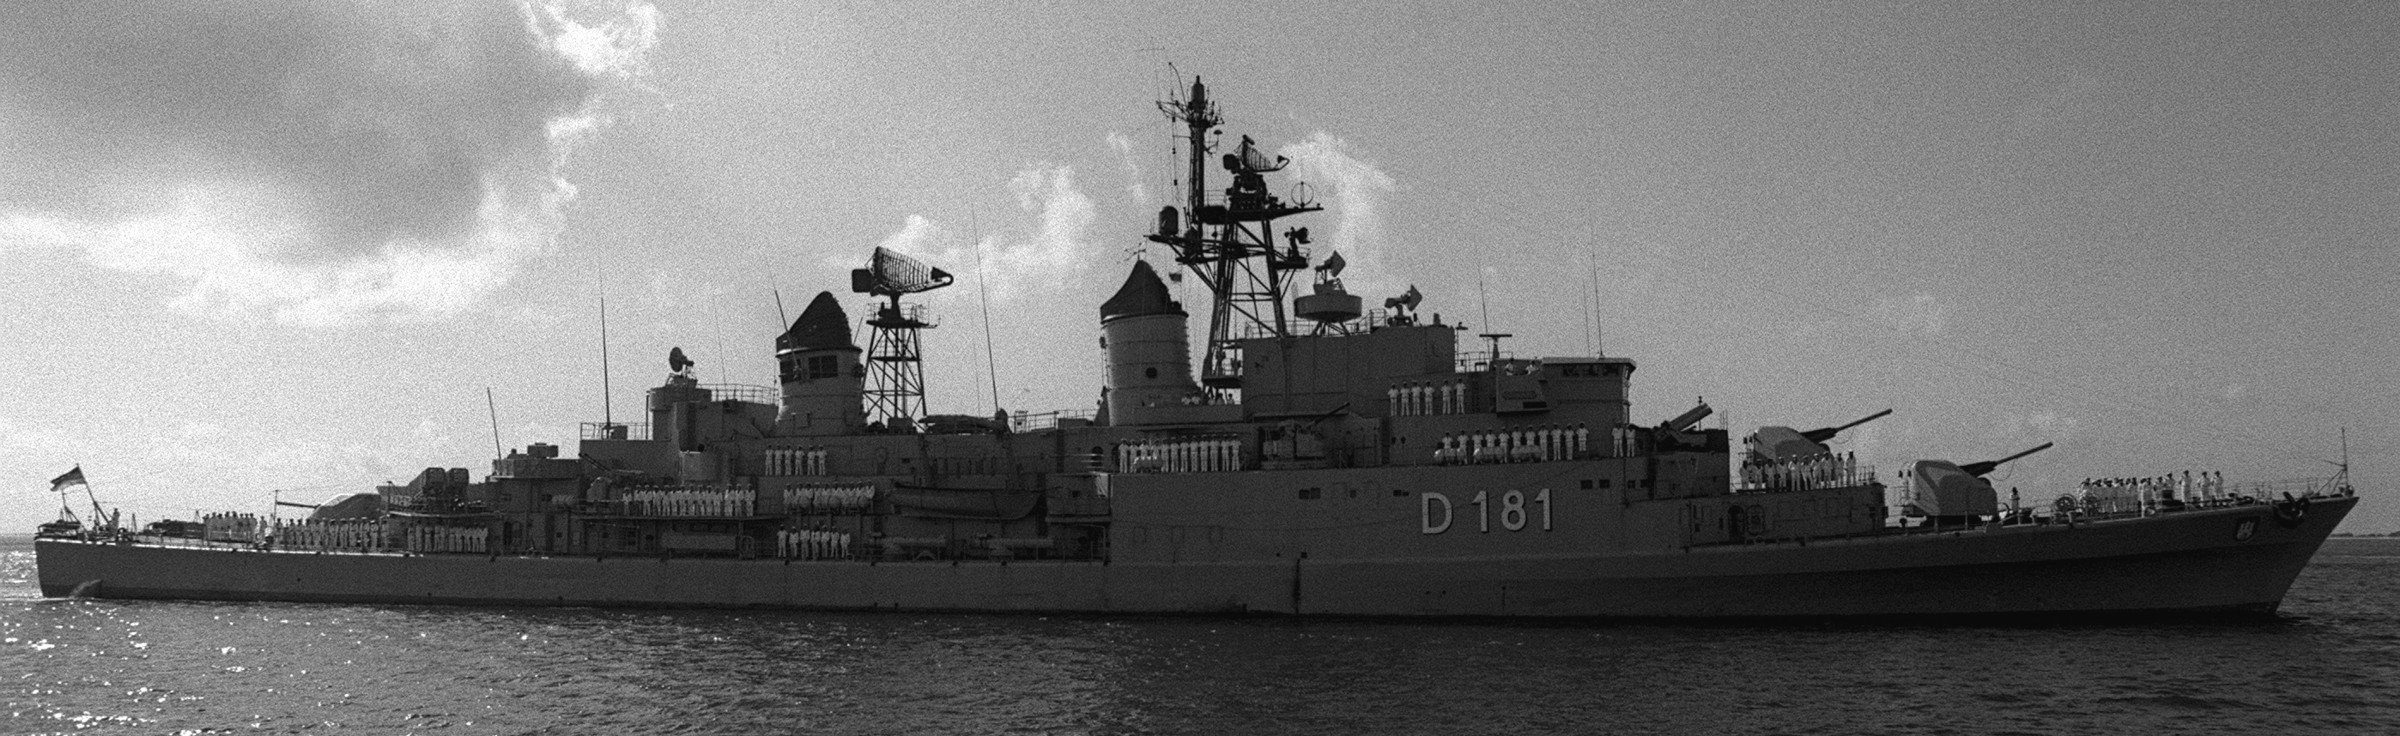 d-181 fgs hamburg type 101a class destroyer german navy deutsche marine 02 mm38 exocet ssm